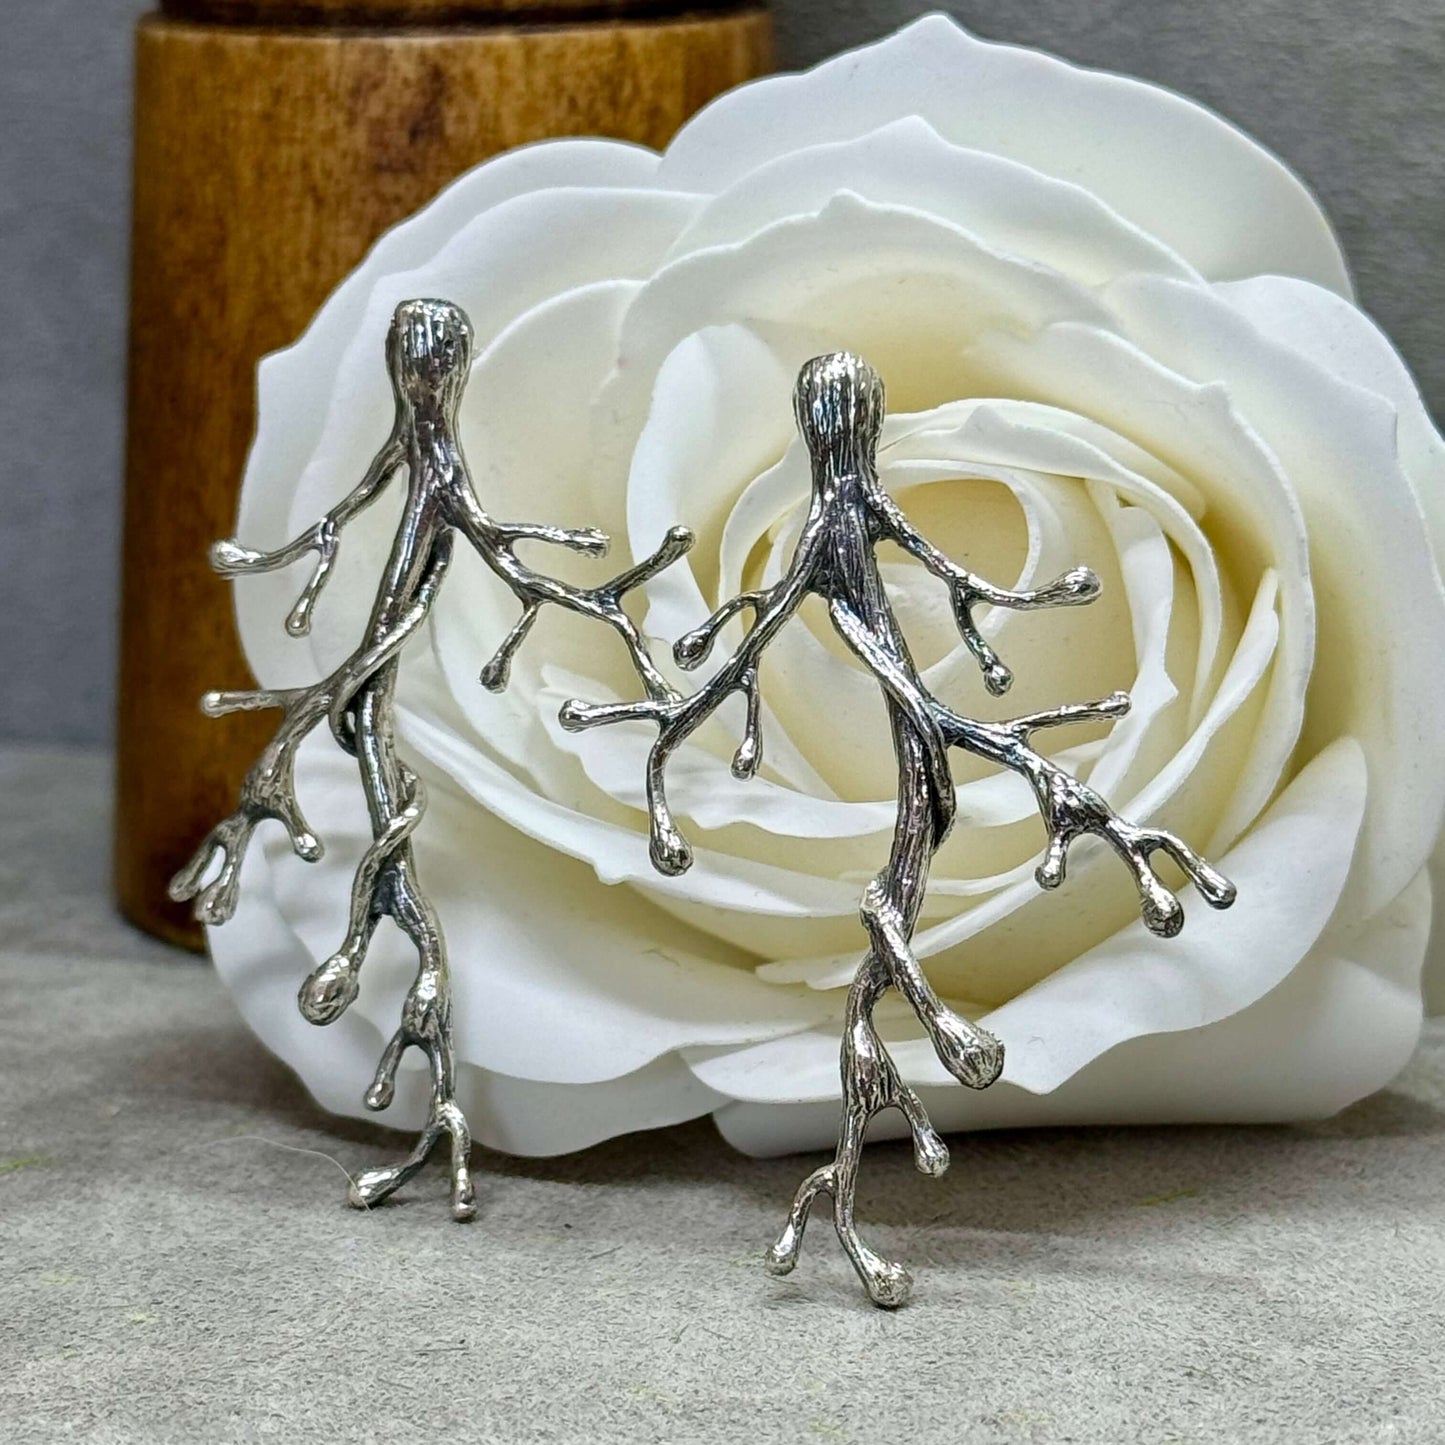 Majestic Sterling Silver Tree Branch Earrings - Twelve Silver Trees